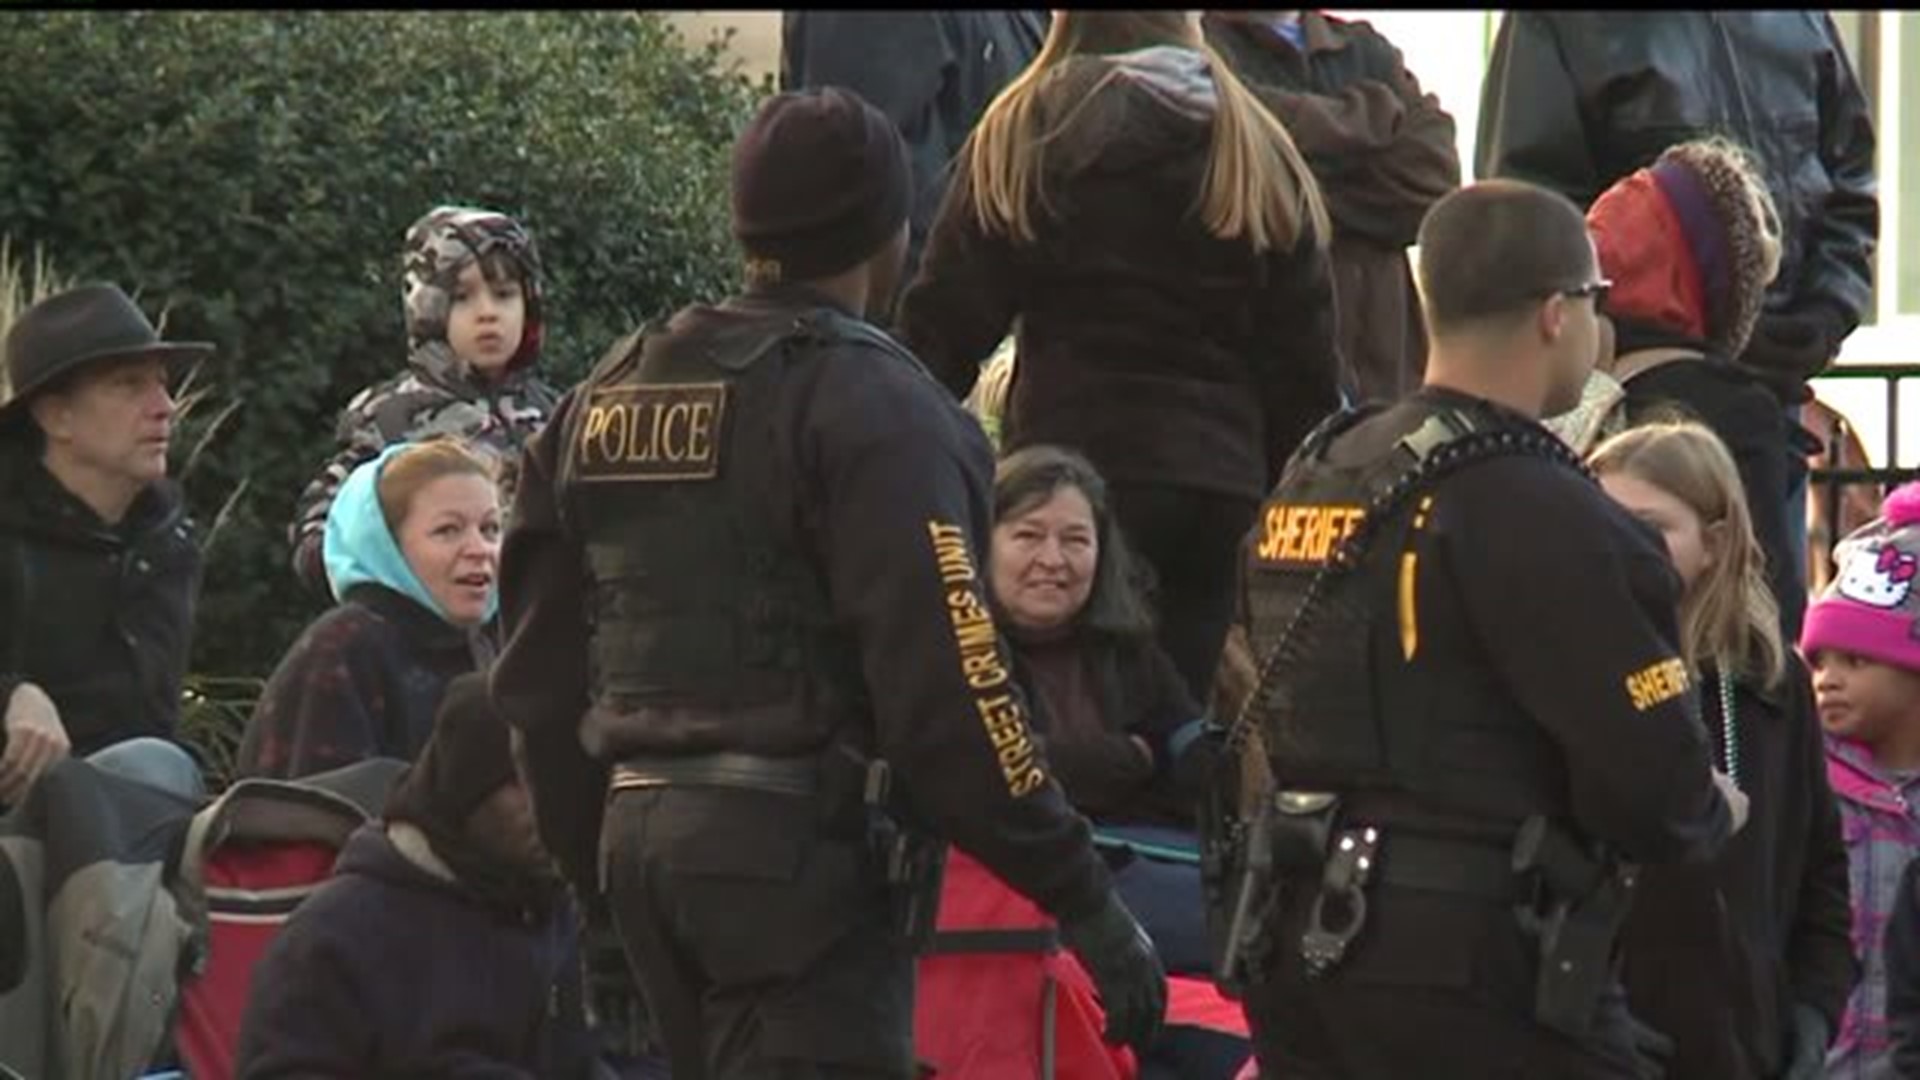 Security increased at Harrisburg Holiday Parade